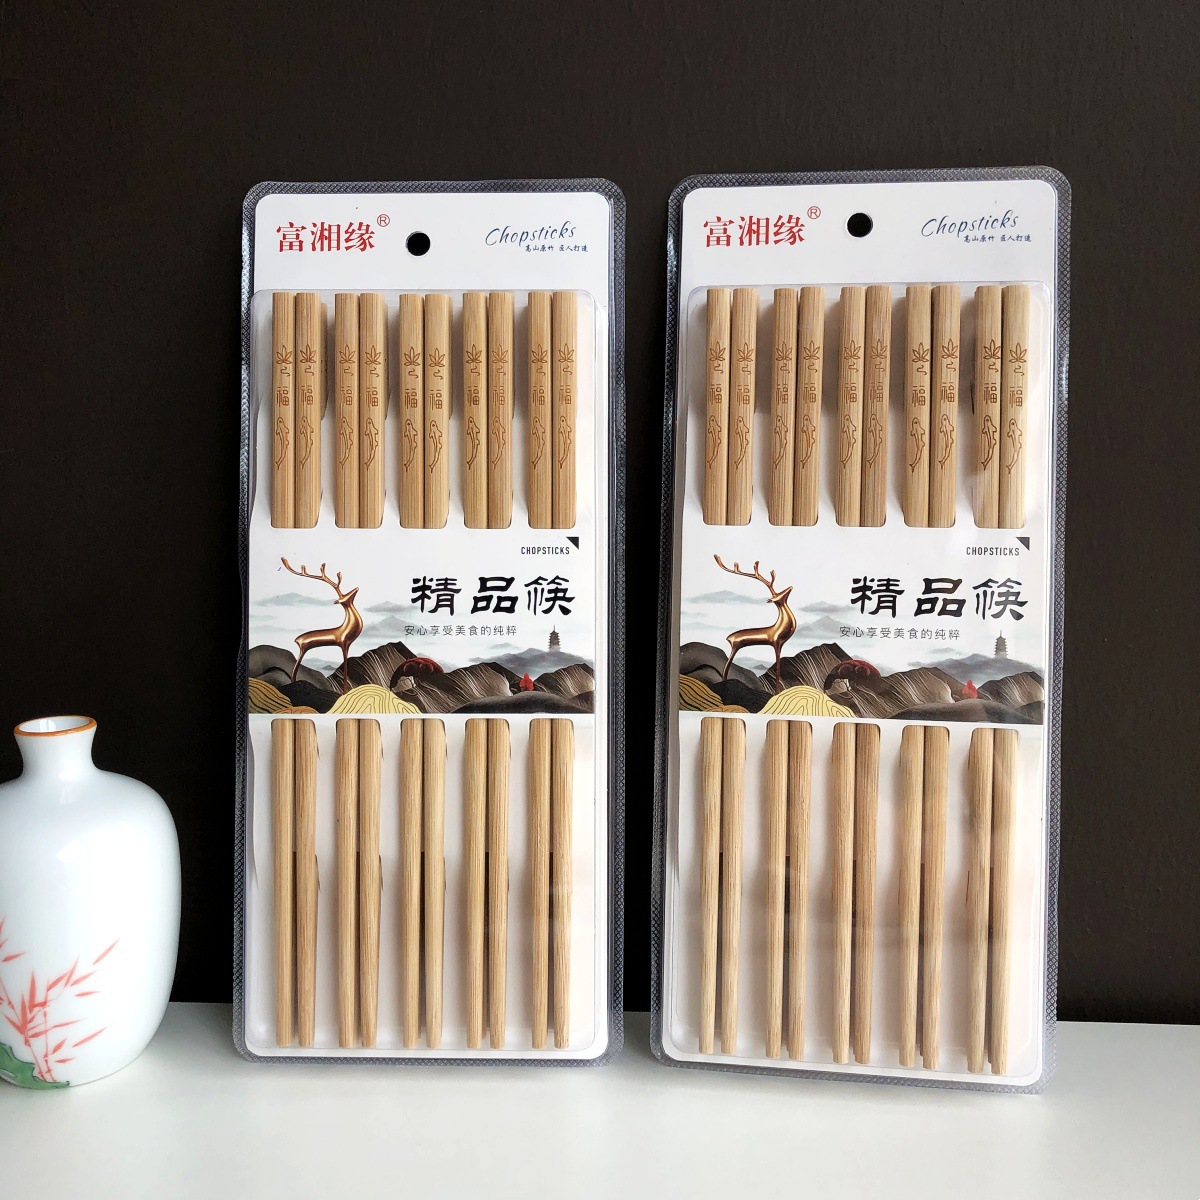 新款家用竹筷10双吸卡装碳化筷子跑江湖地摊货源年货激光筷子批发